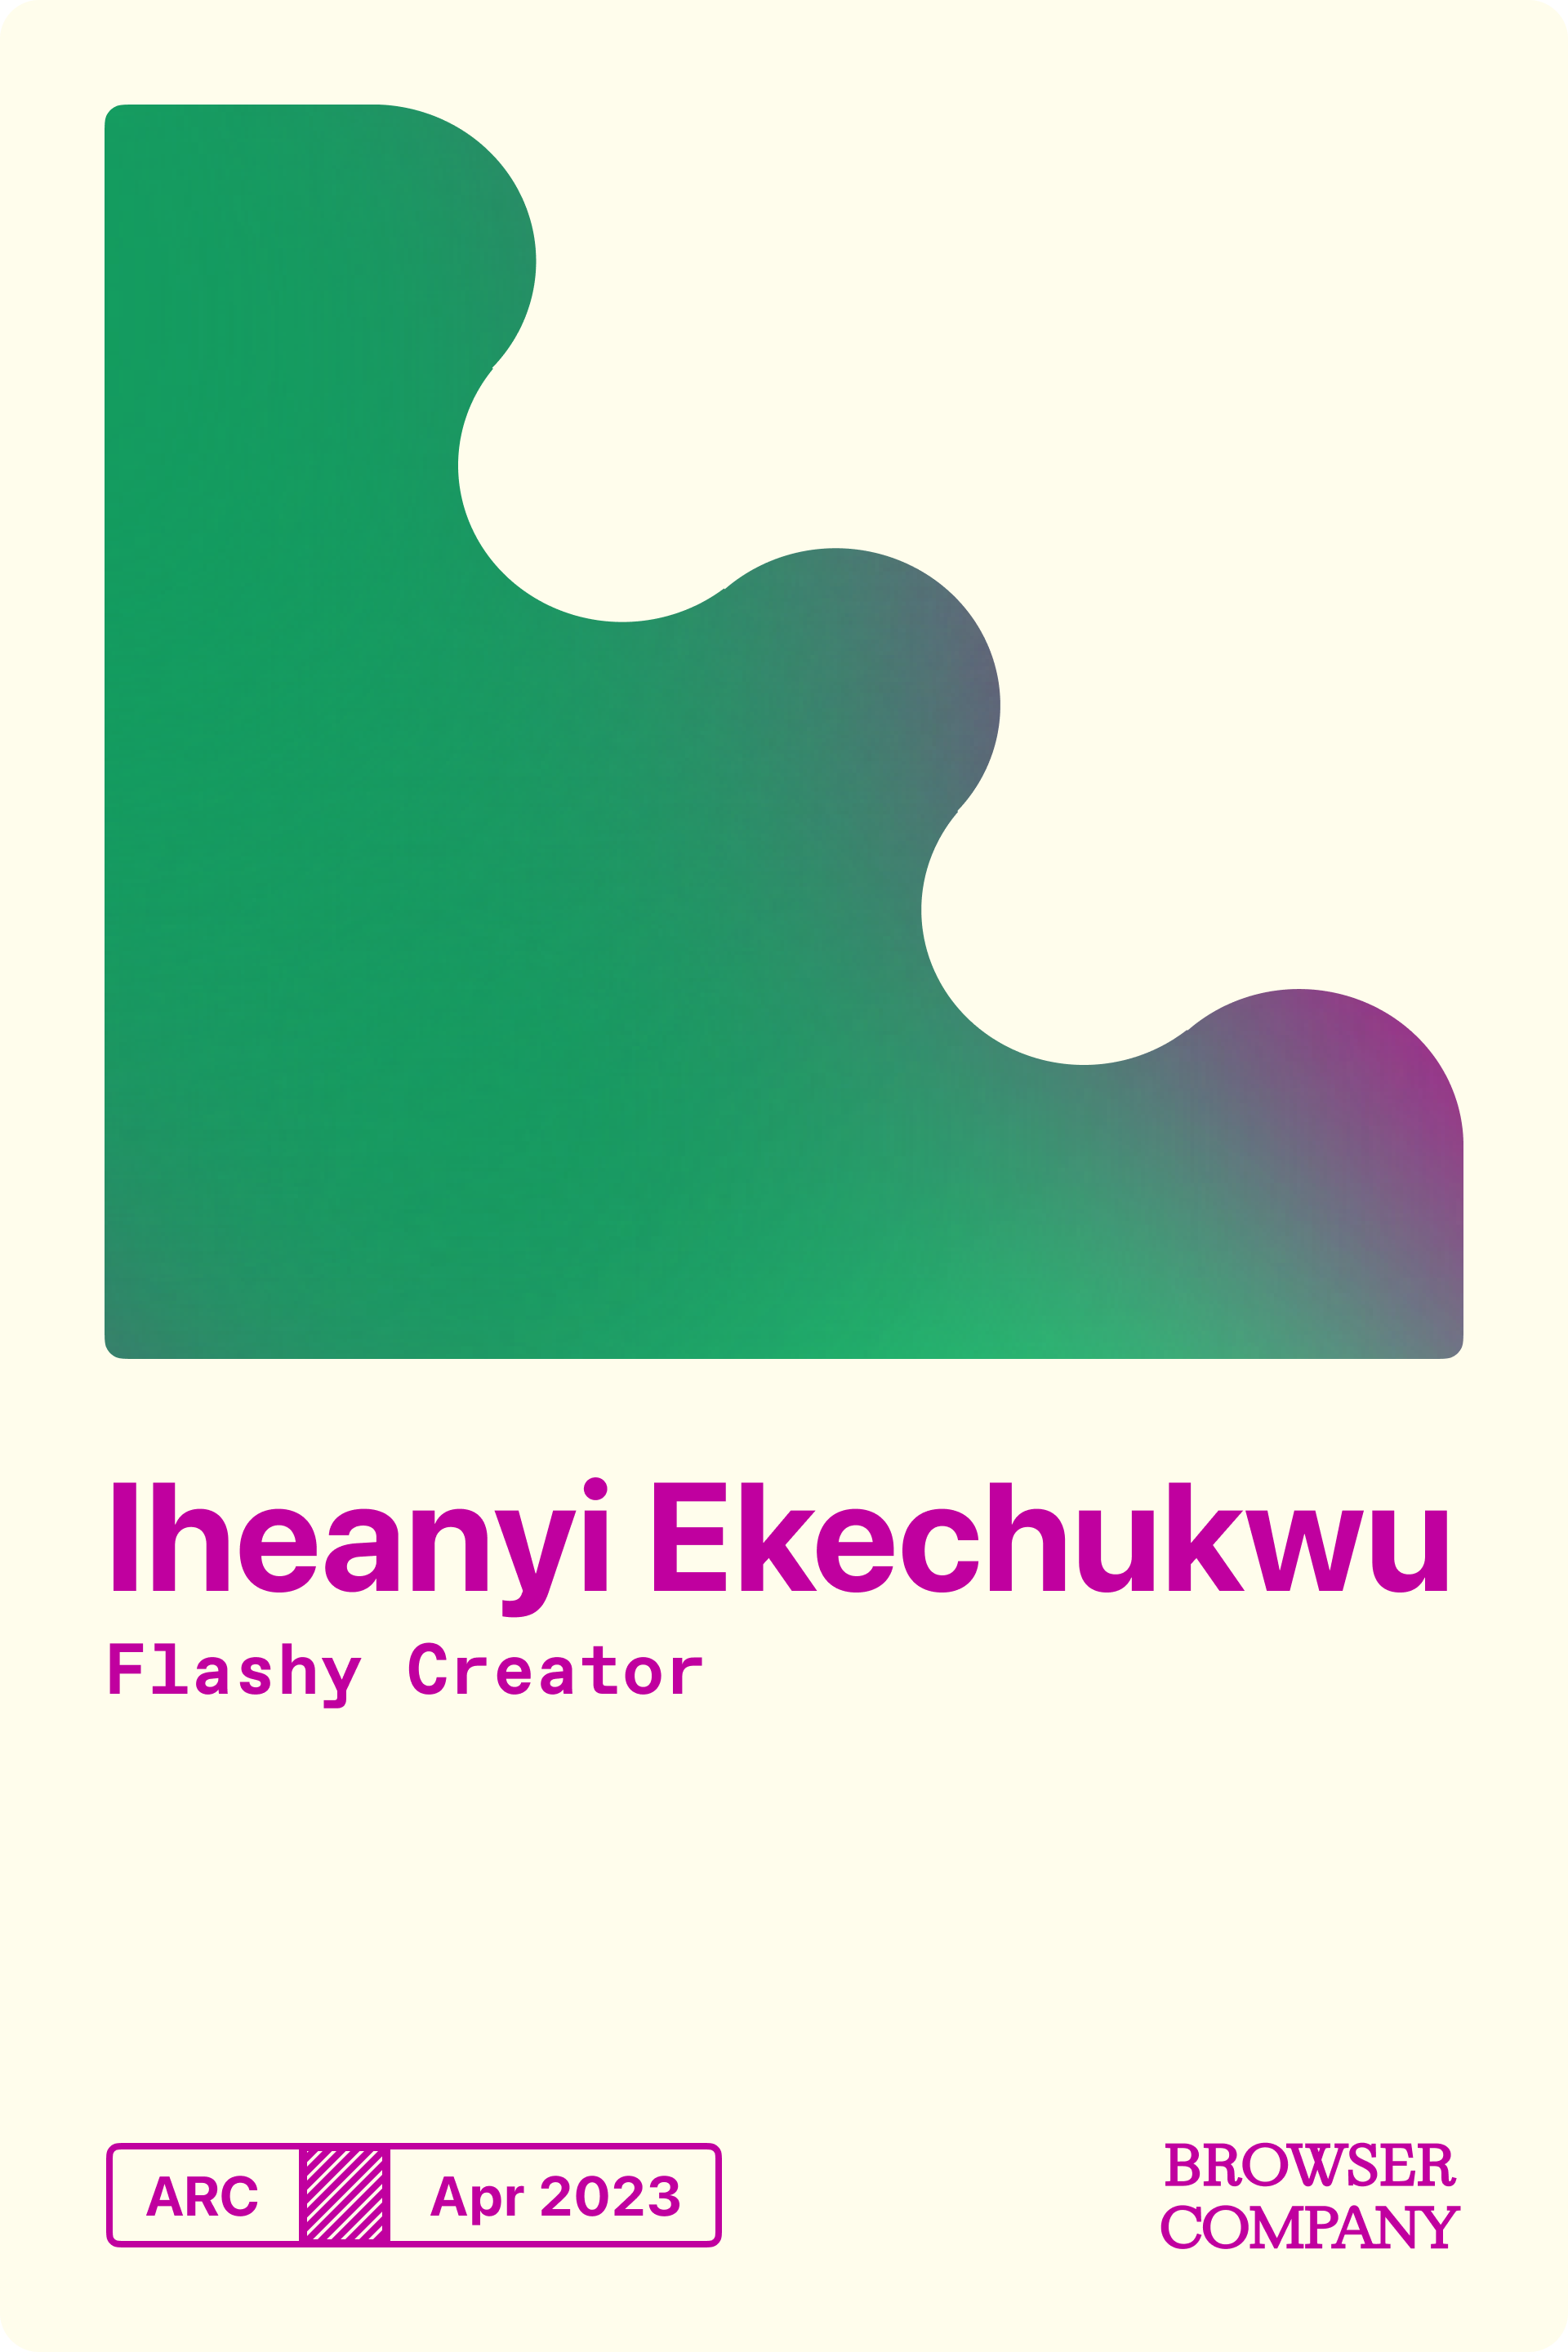 Iheanyi Ekechukwu's Member Card